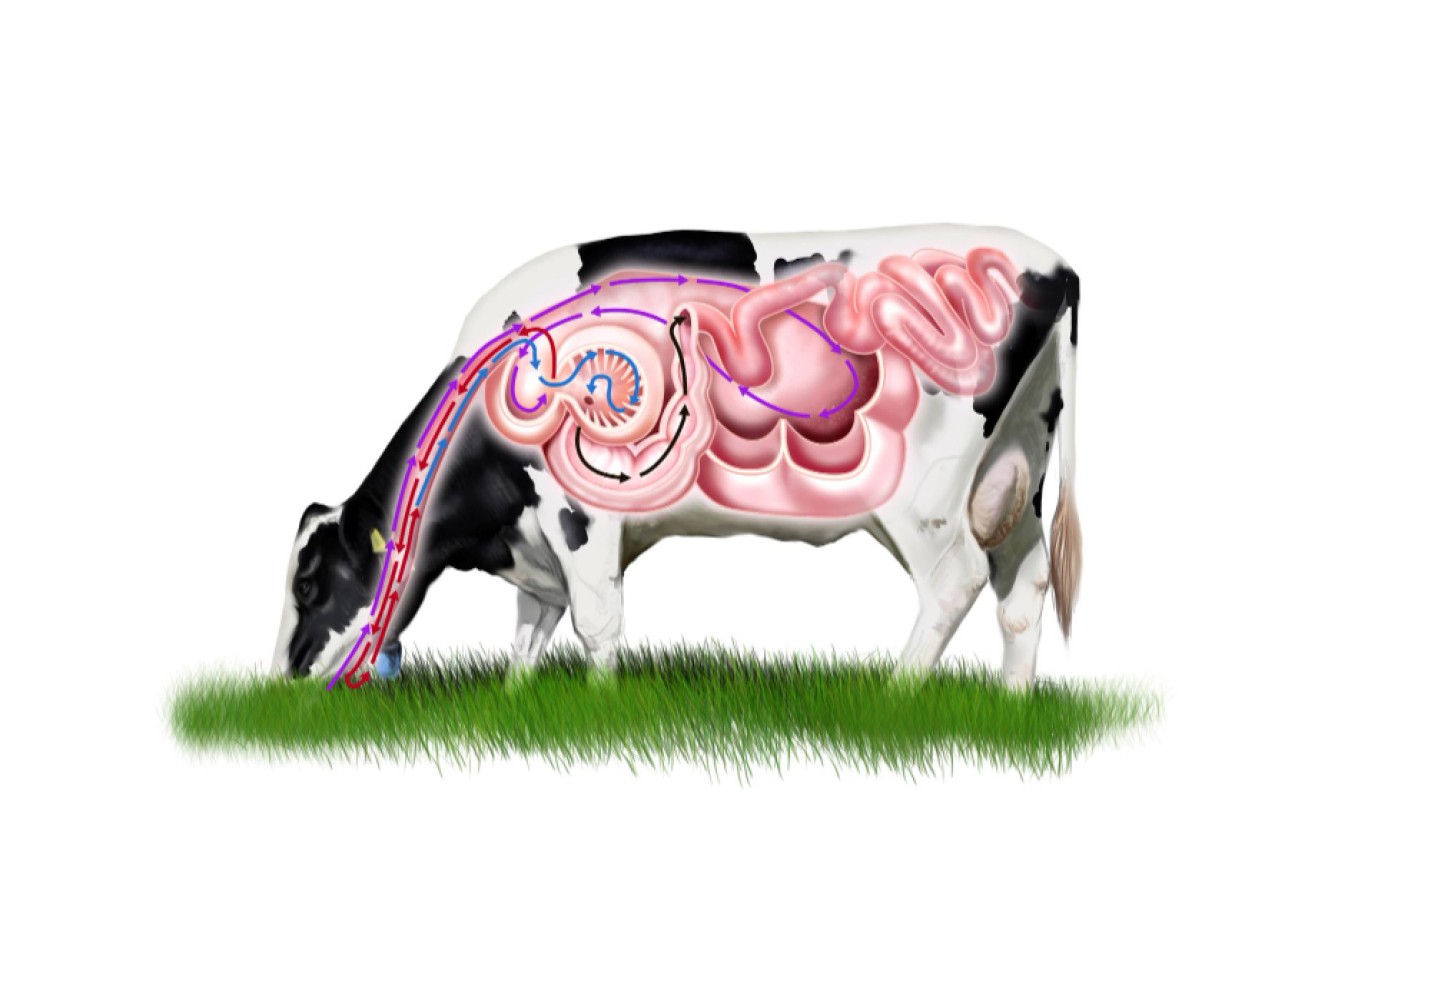 Эта статья освещает анатомию и функции молочной железы коровы. Она позволит вам более глубоко понять процесс выработки молока и тонкости молочной промышленности.